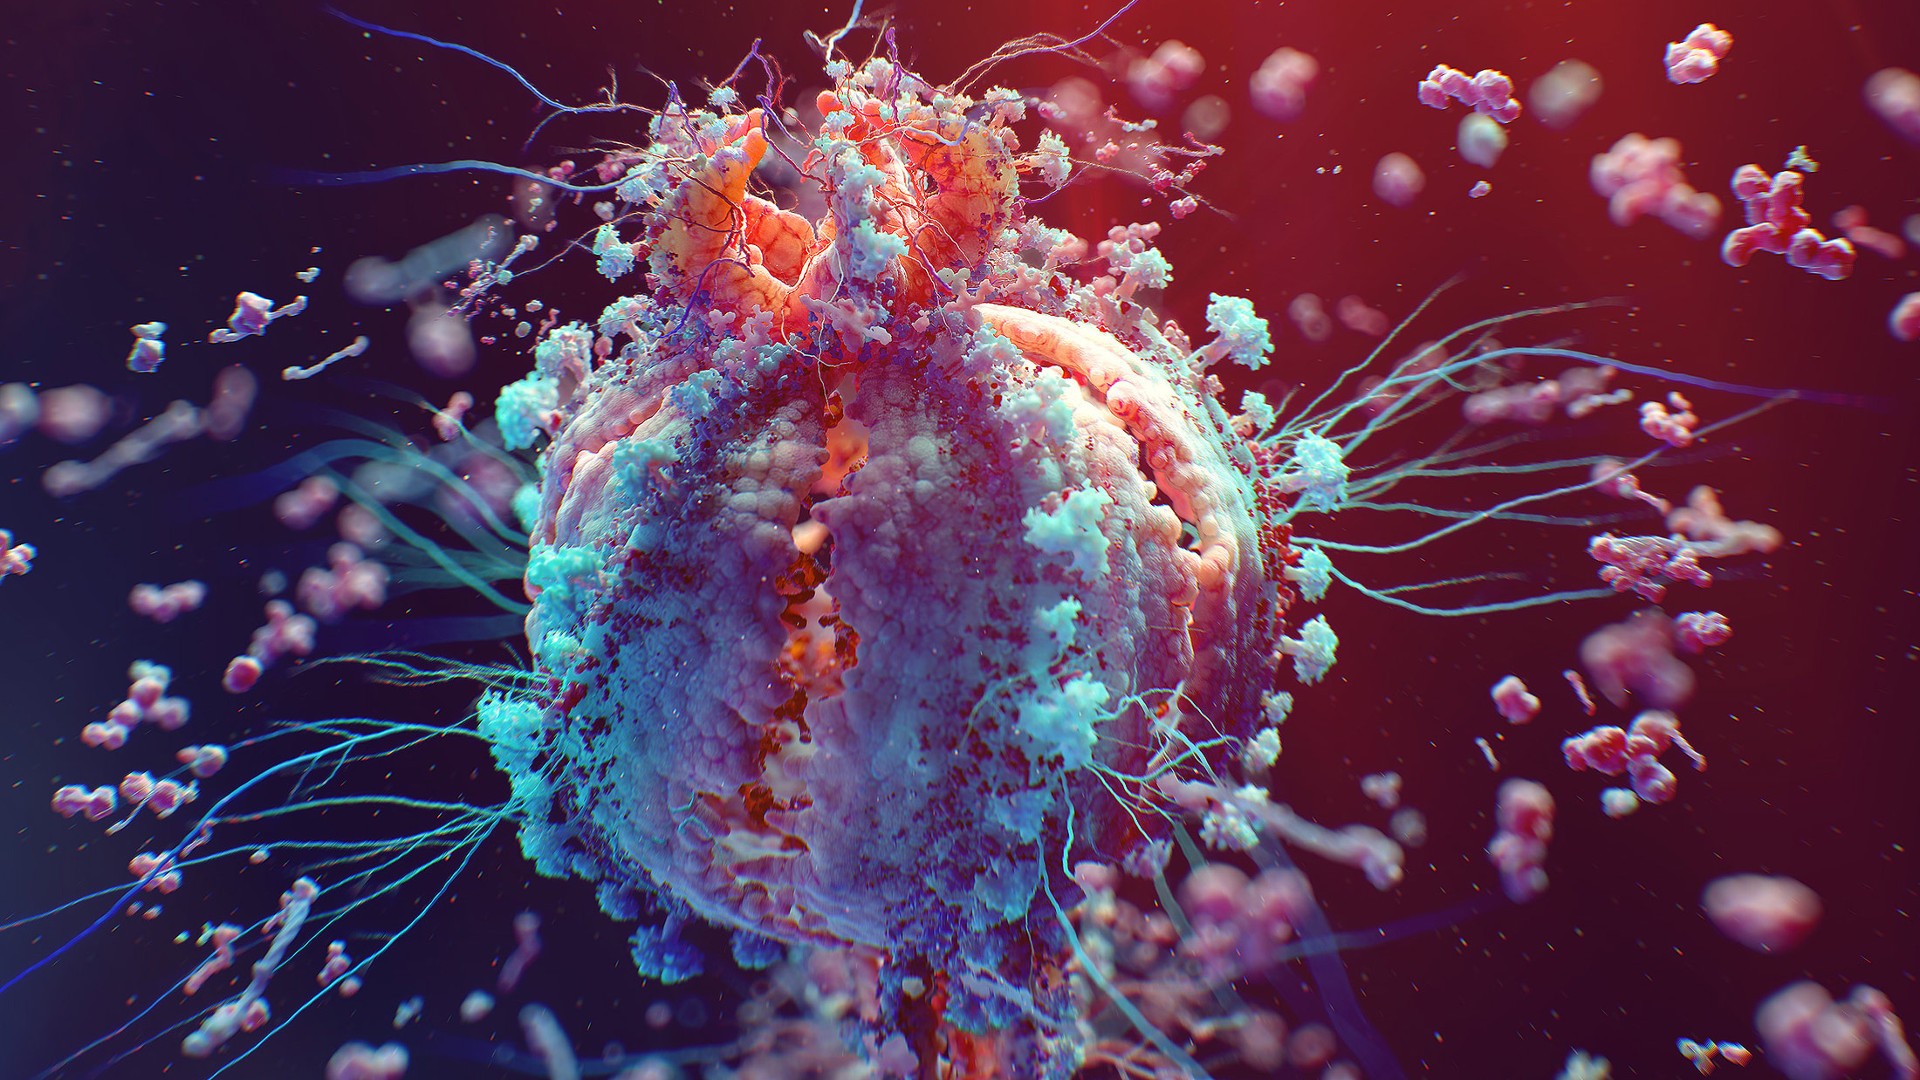 Digital Art Colorful Macro HiV Disease Cells 1920x1080